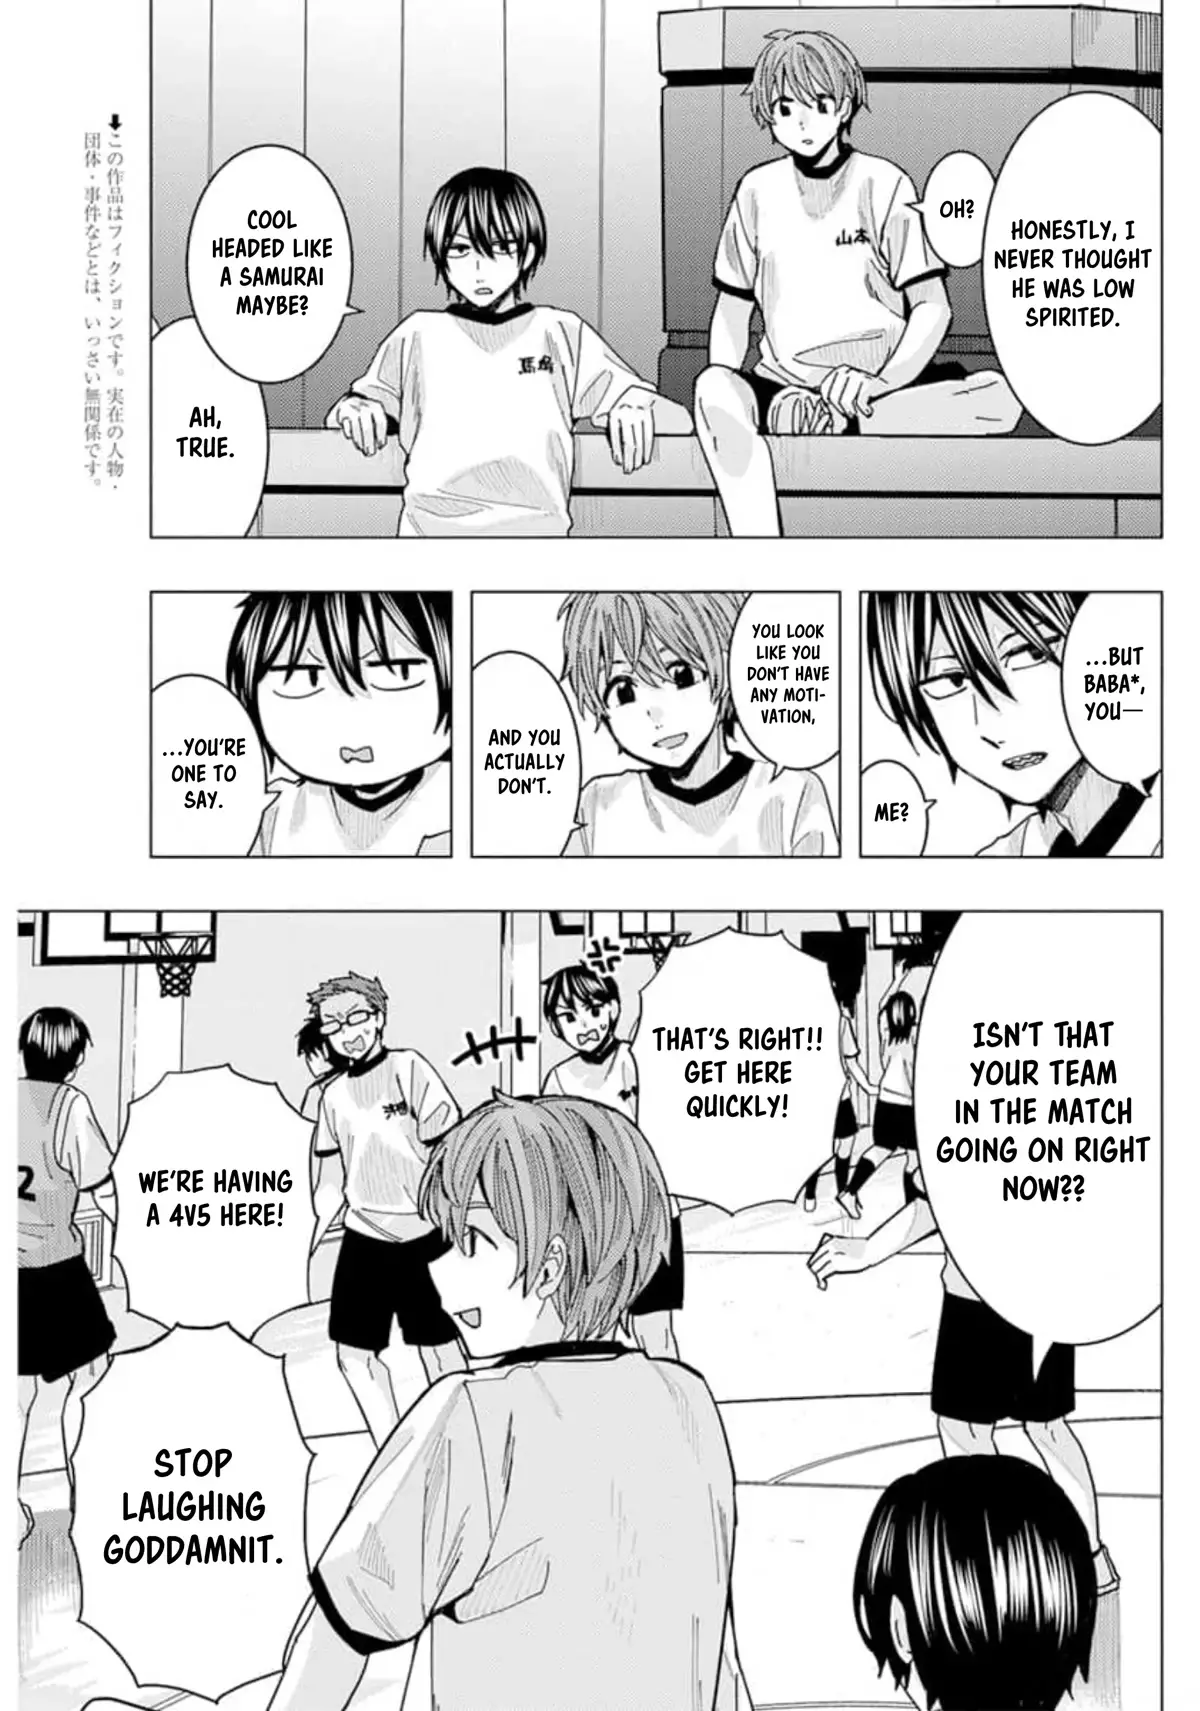 "nobukuni-San" Does She Like Me? - 22 page 4-8f4f00e1